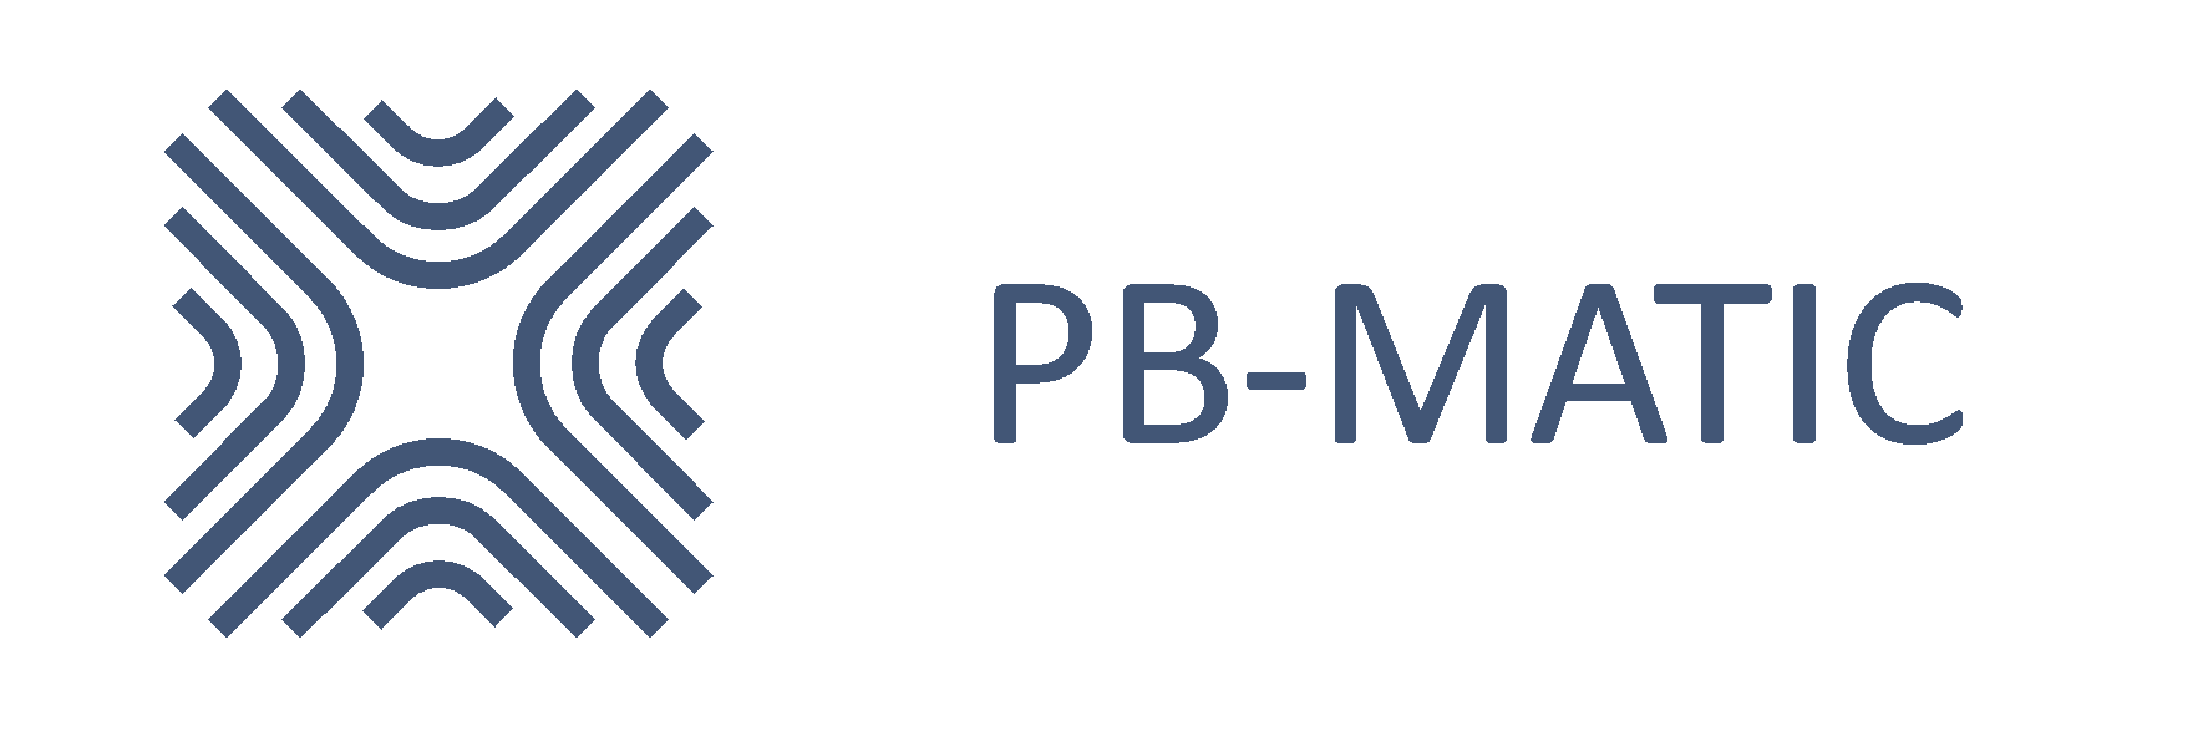 PB-Matic